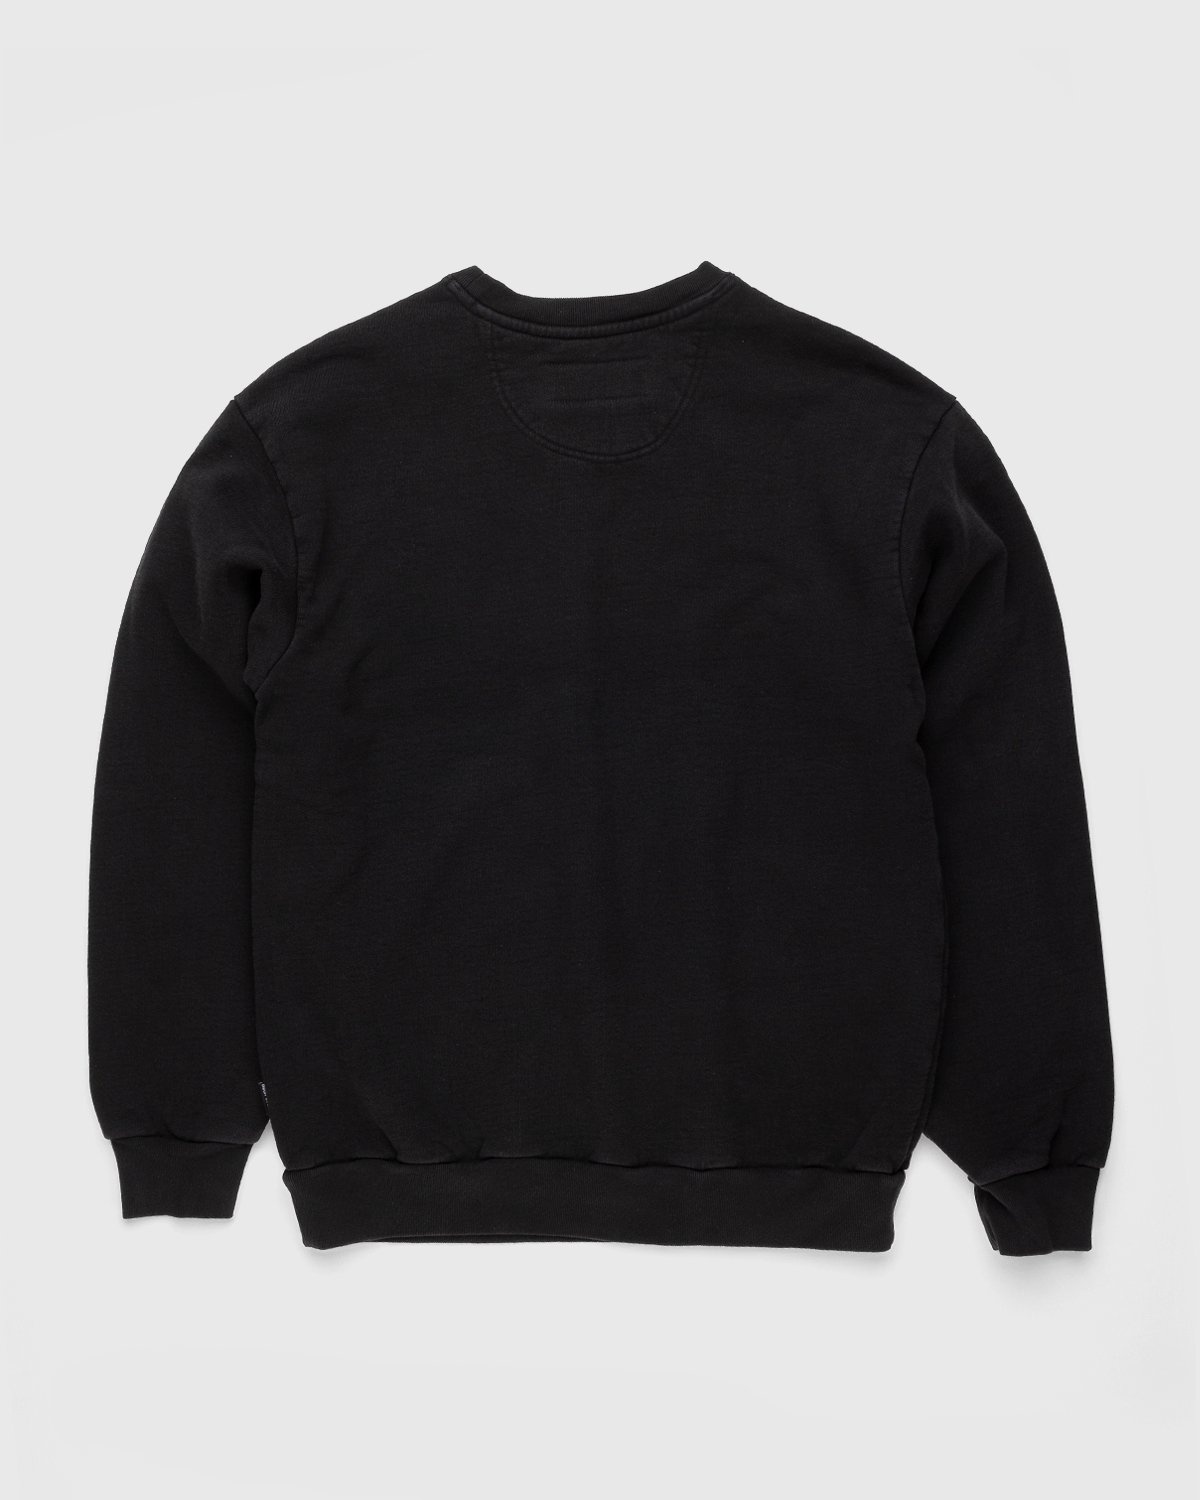 Noon Goons – Garden Sweatshirt Black - Sweats - Black - Image 2